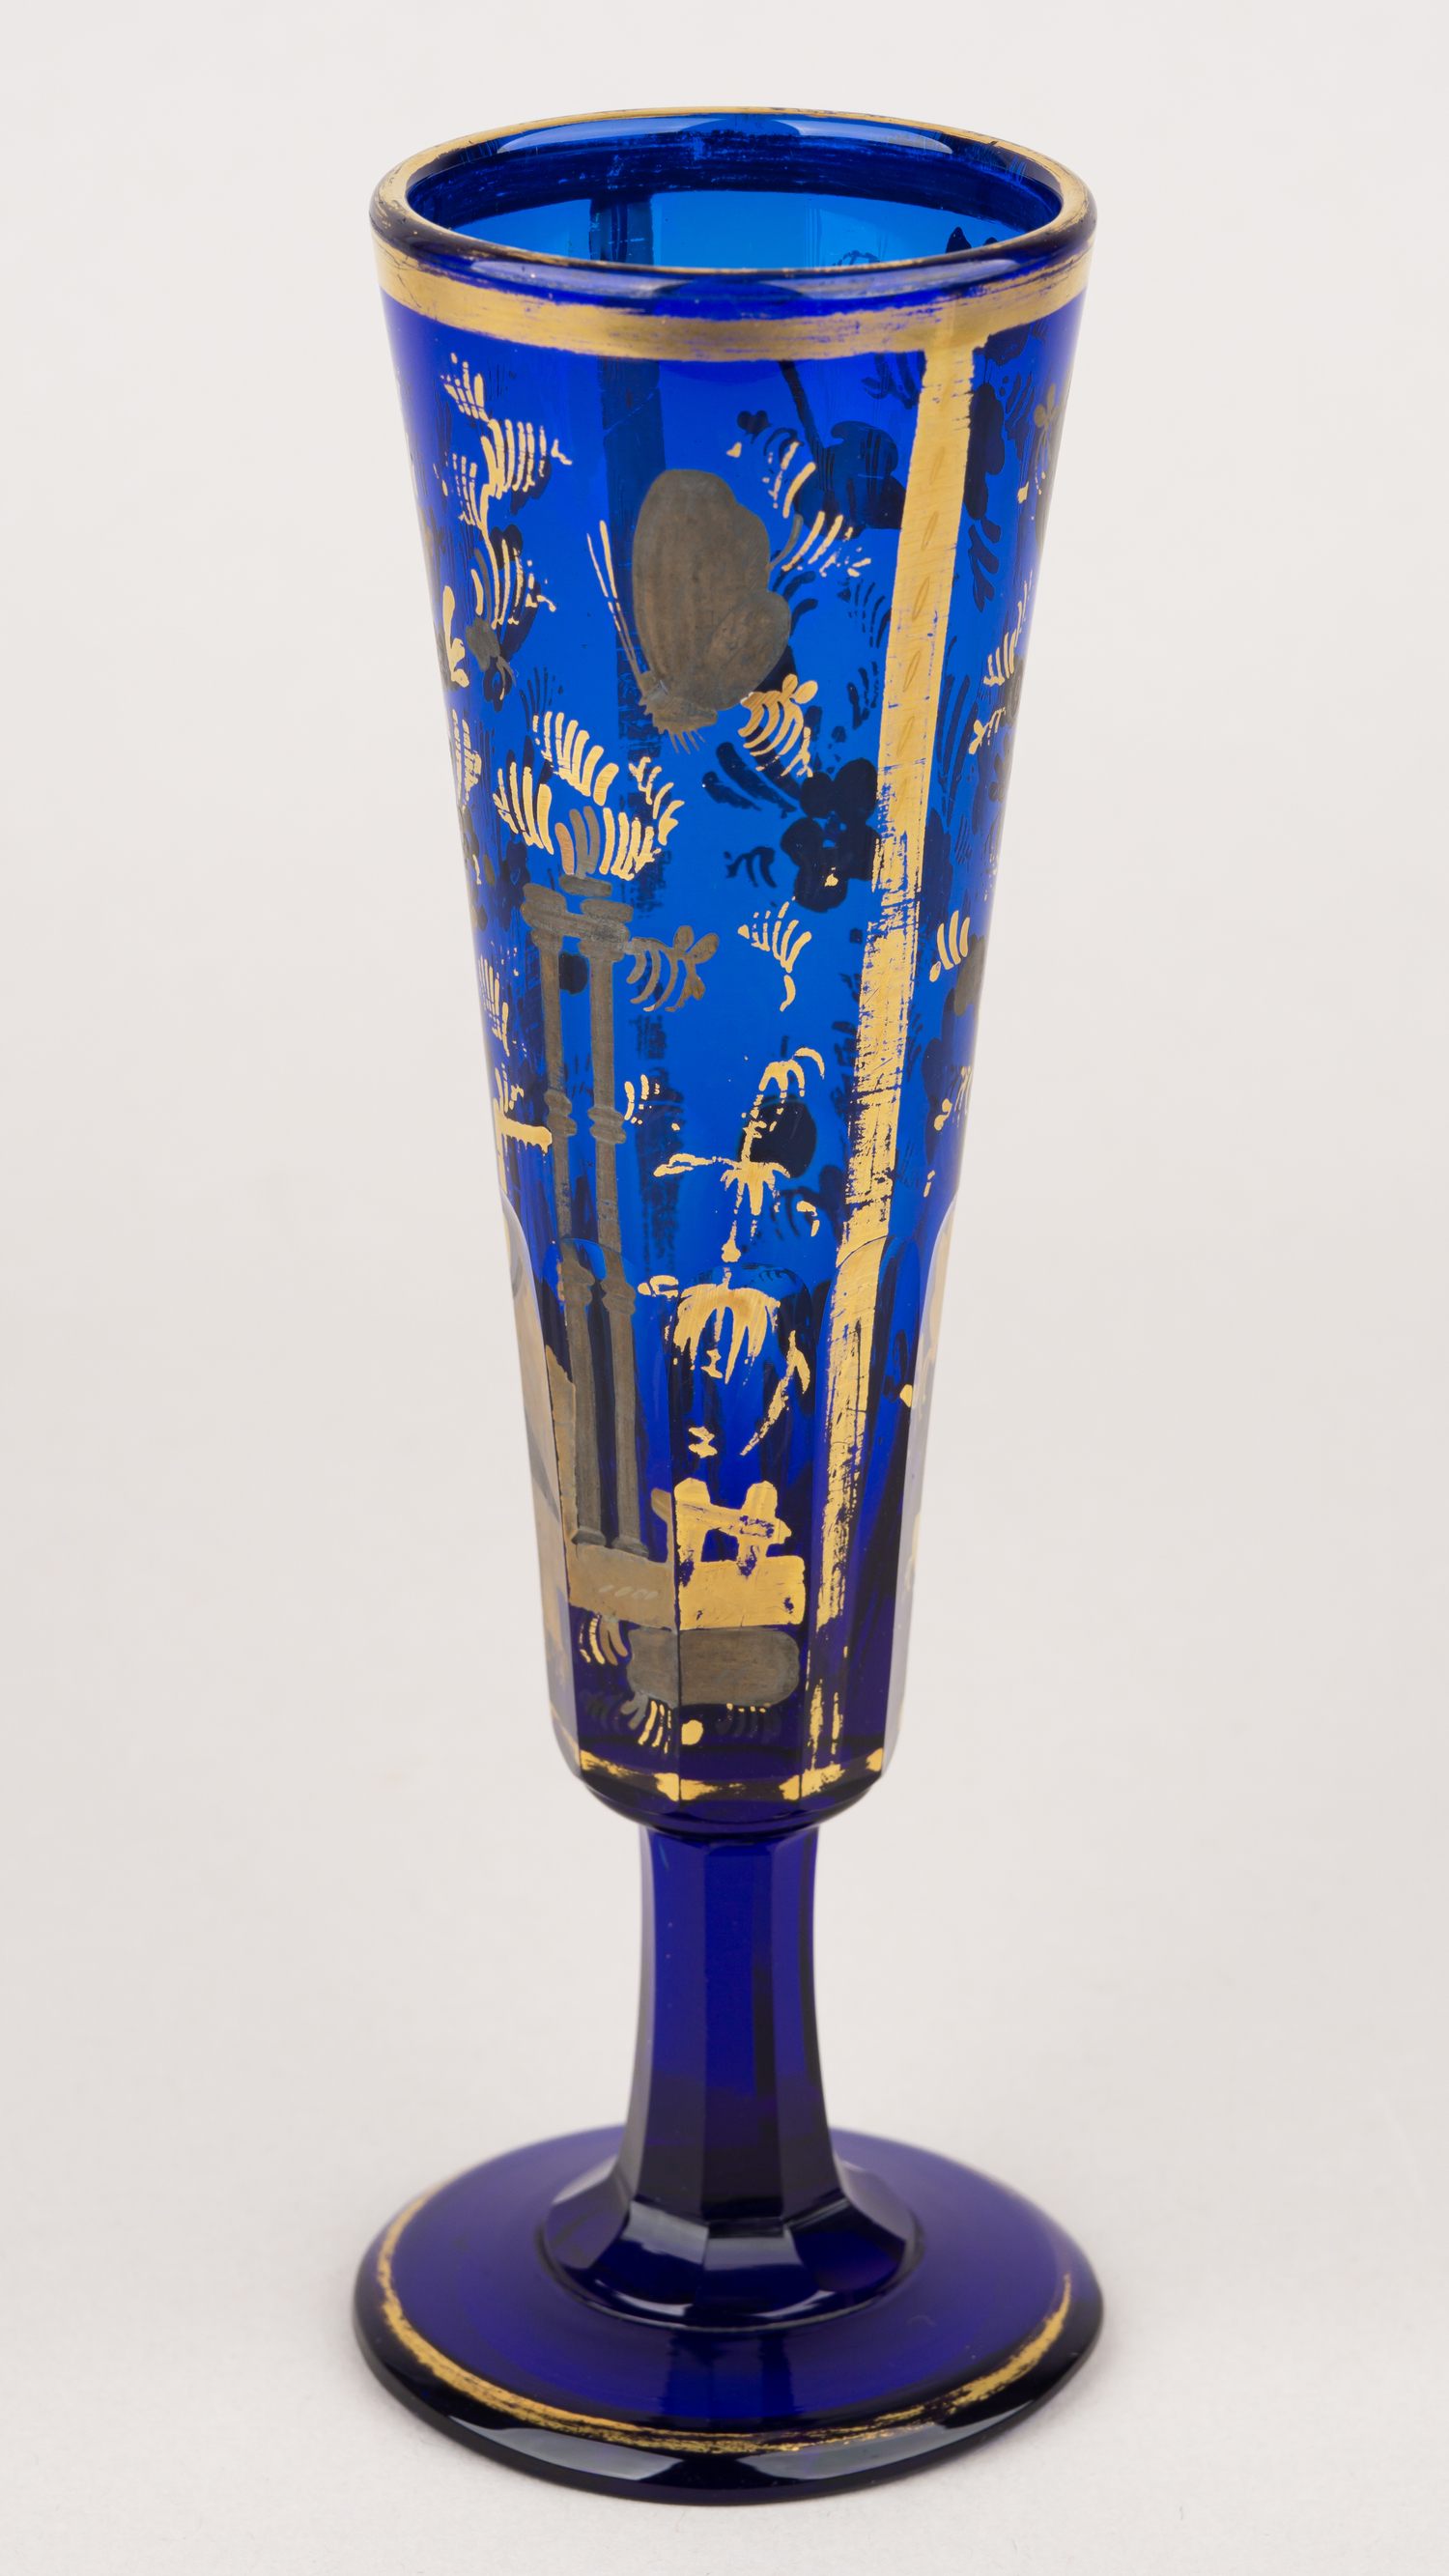 (ИСЗ) Бокал-флейта с изображением архитектуры, цветов и бабочек.<br>Россия, Санкт-Петербург, Императорский стеклянный завод, 1820-1830-ые гг.